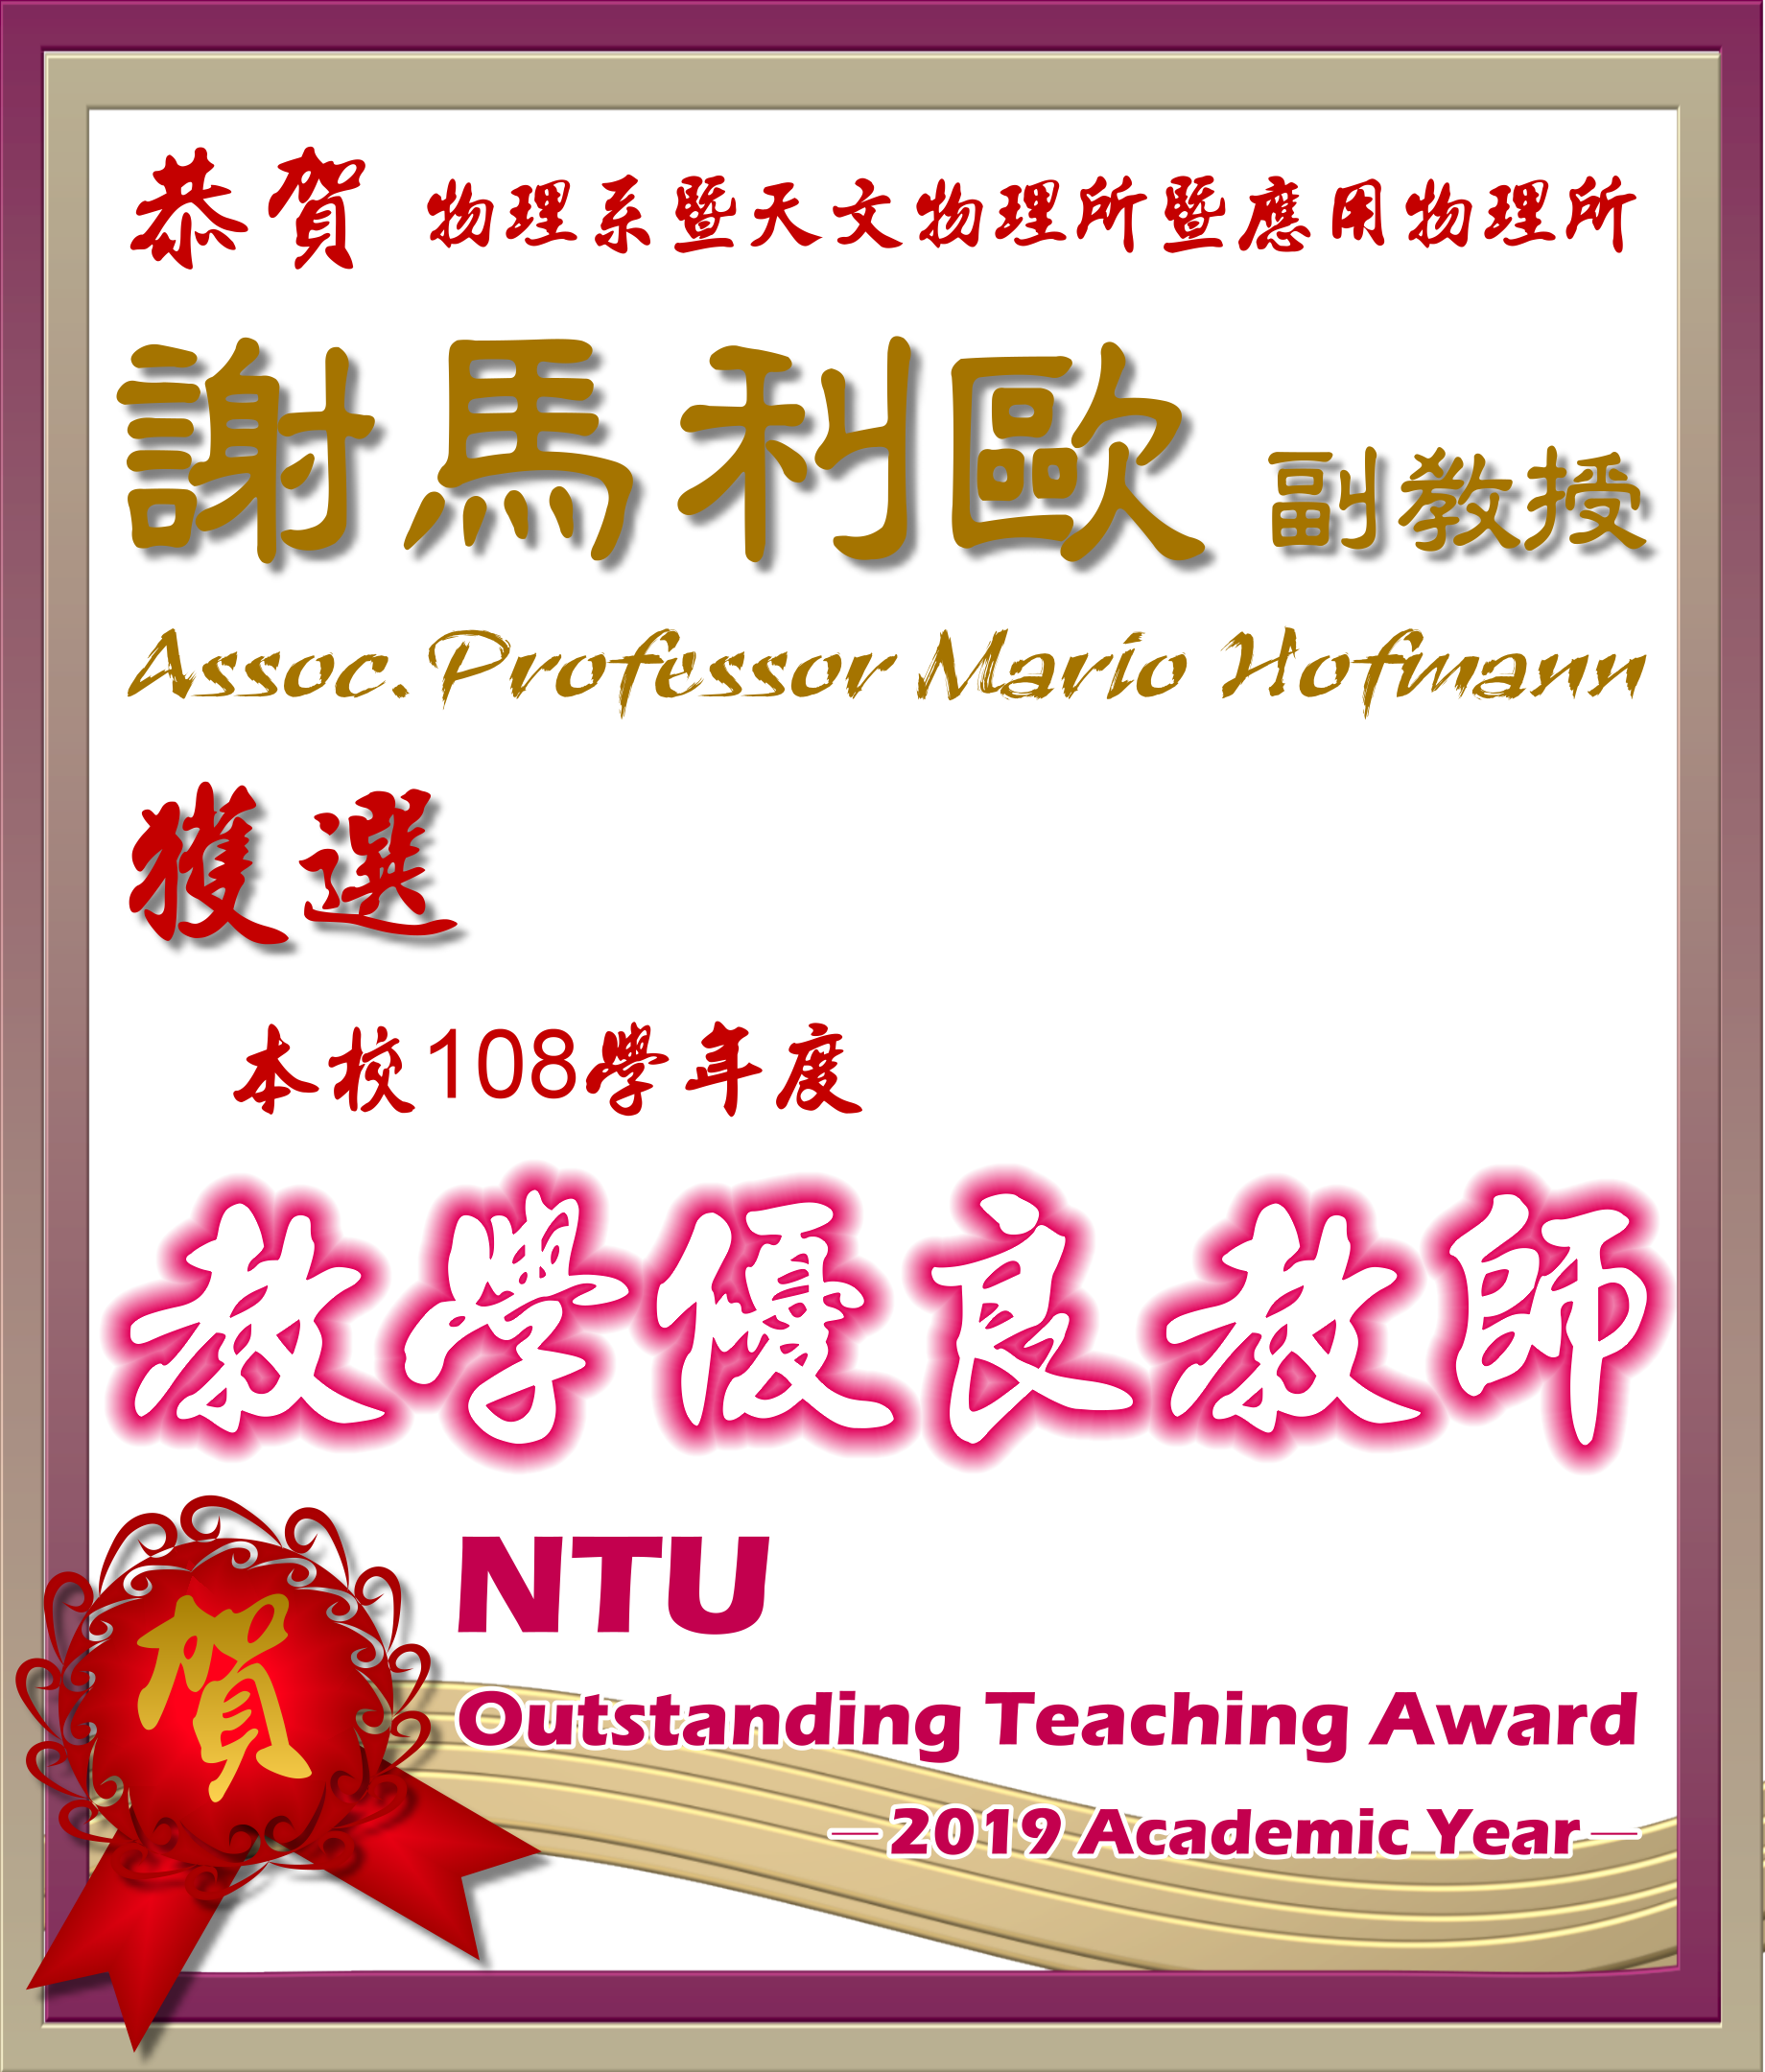 《賀》本系 謝馬利歐 副教授獲選 108學年度《教學優良教師》(NTU Outstanding Teaching Award)